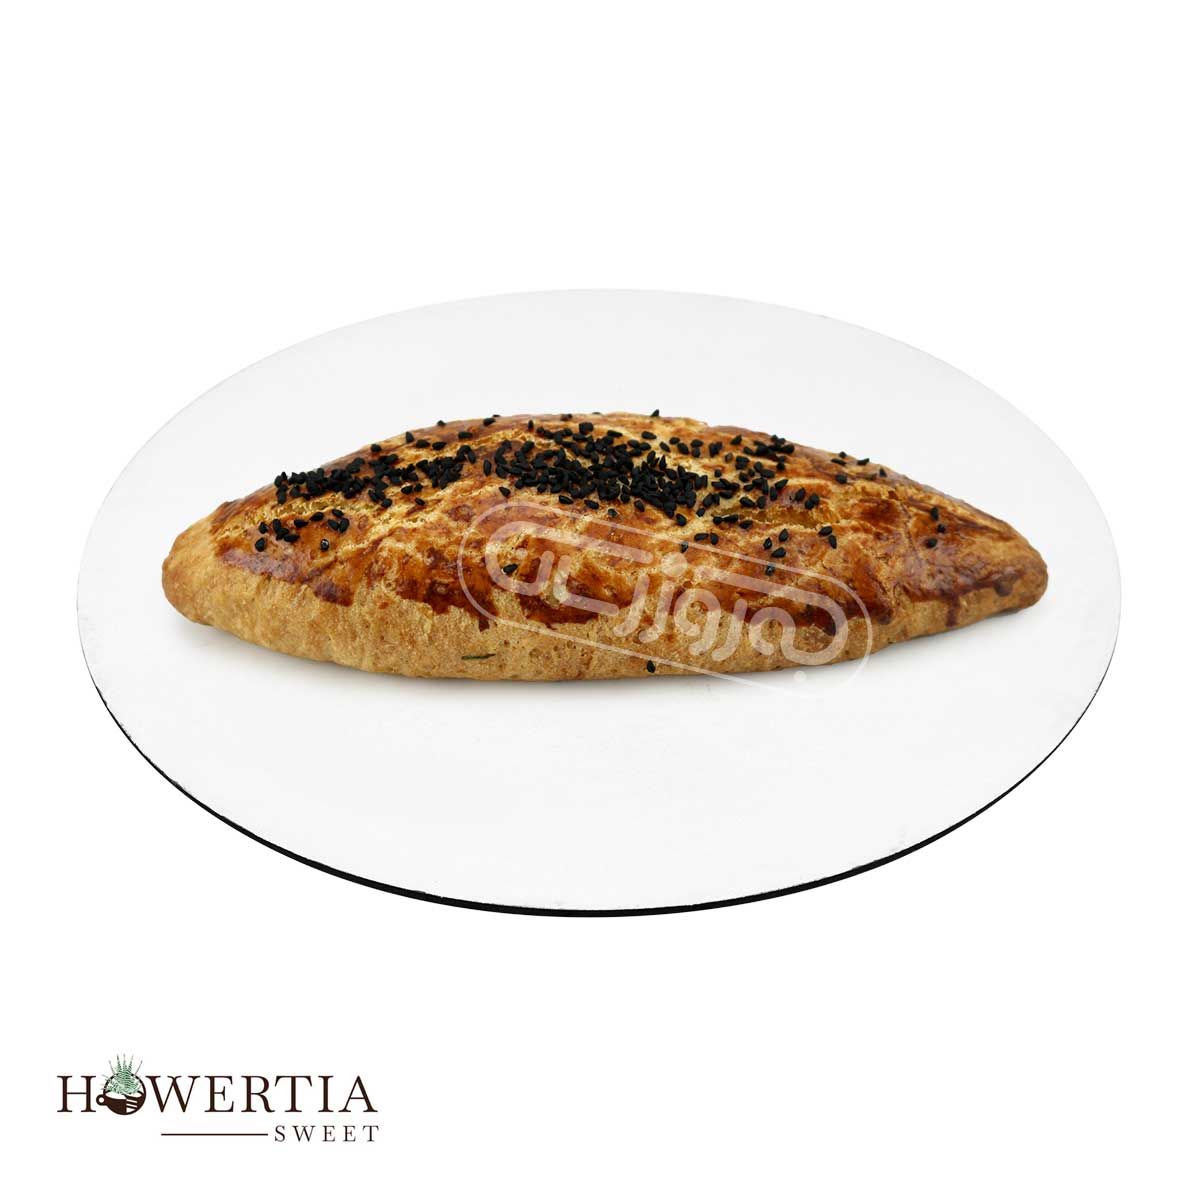 نان پوآچا هاورتیا وزن تقریبی بین 100 تا 200 گرمی